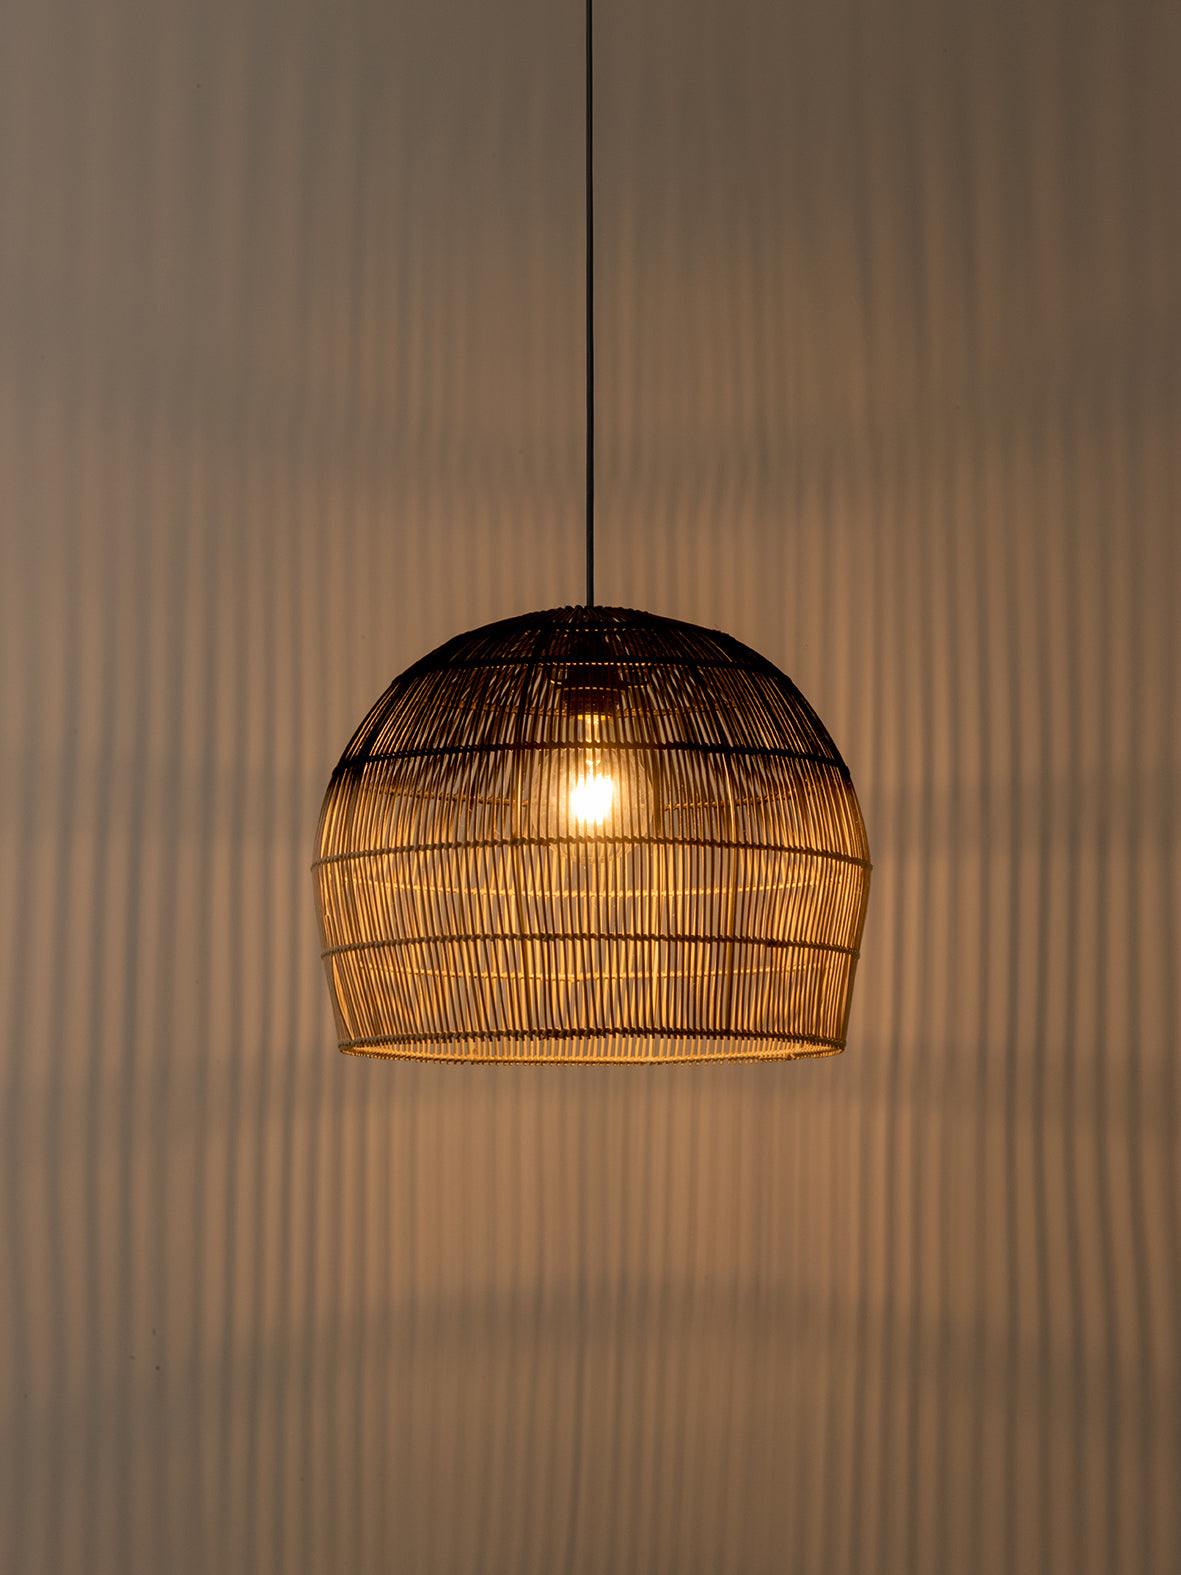 Bilu - black and natural ombre pendant light | Ceiling Light | Lights & Lamps Inc | Modern Affordable Designer Lighting | USA